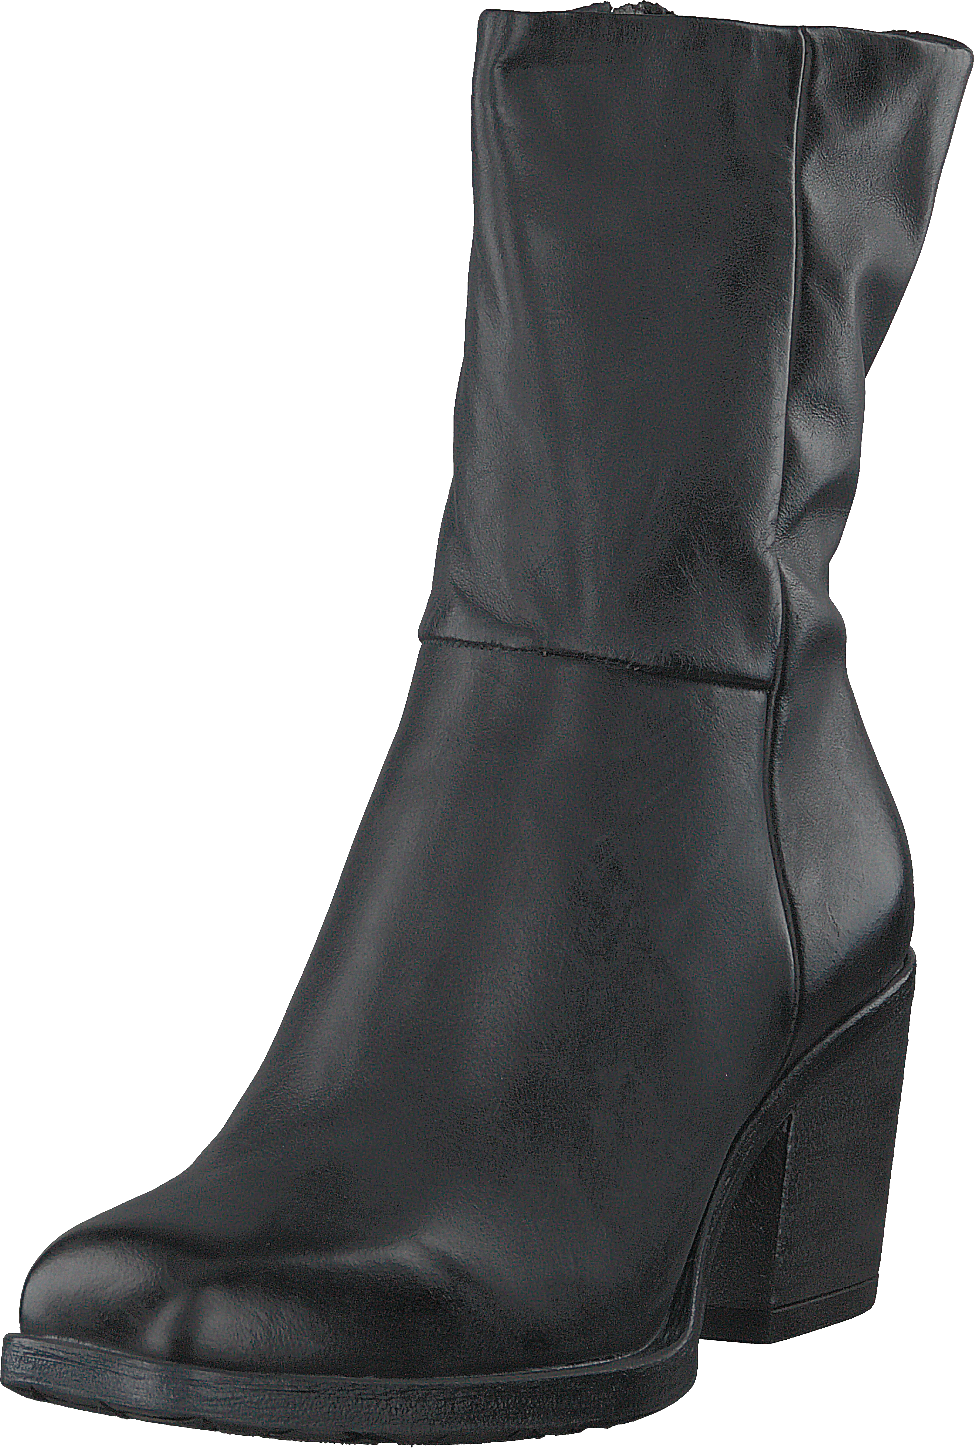 Boots Zip Kir Nero/6051